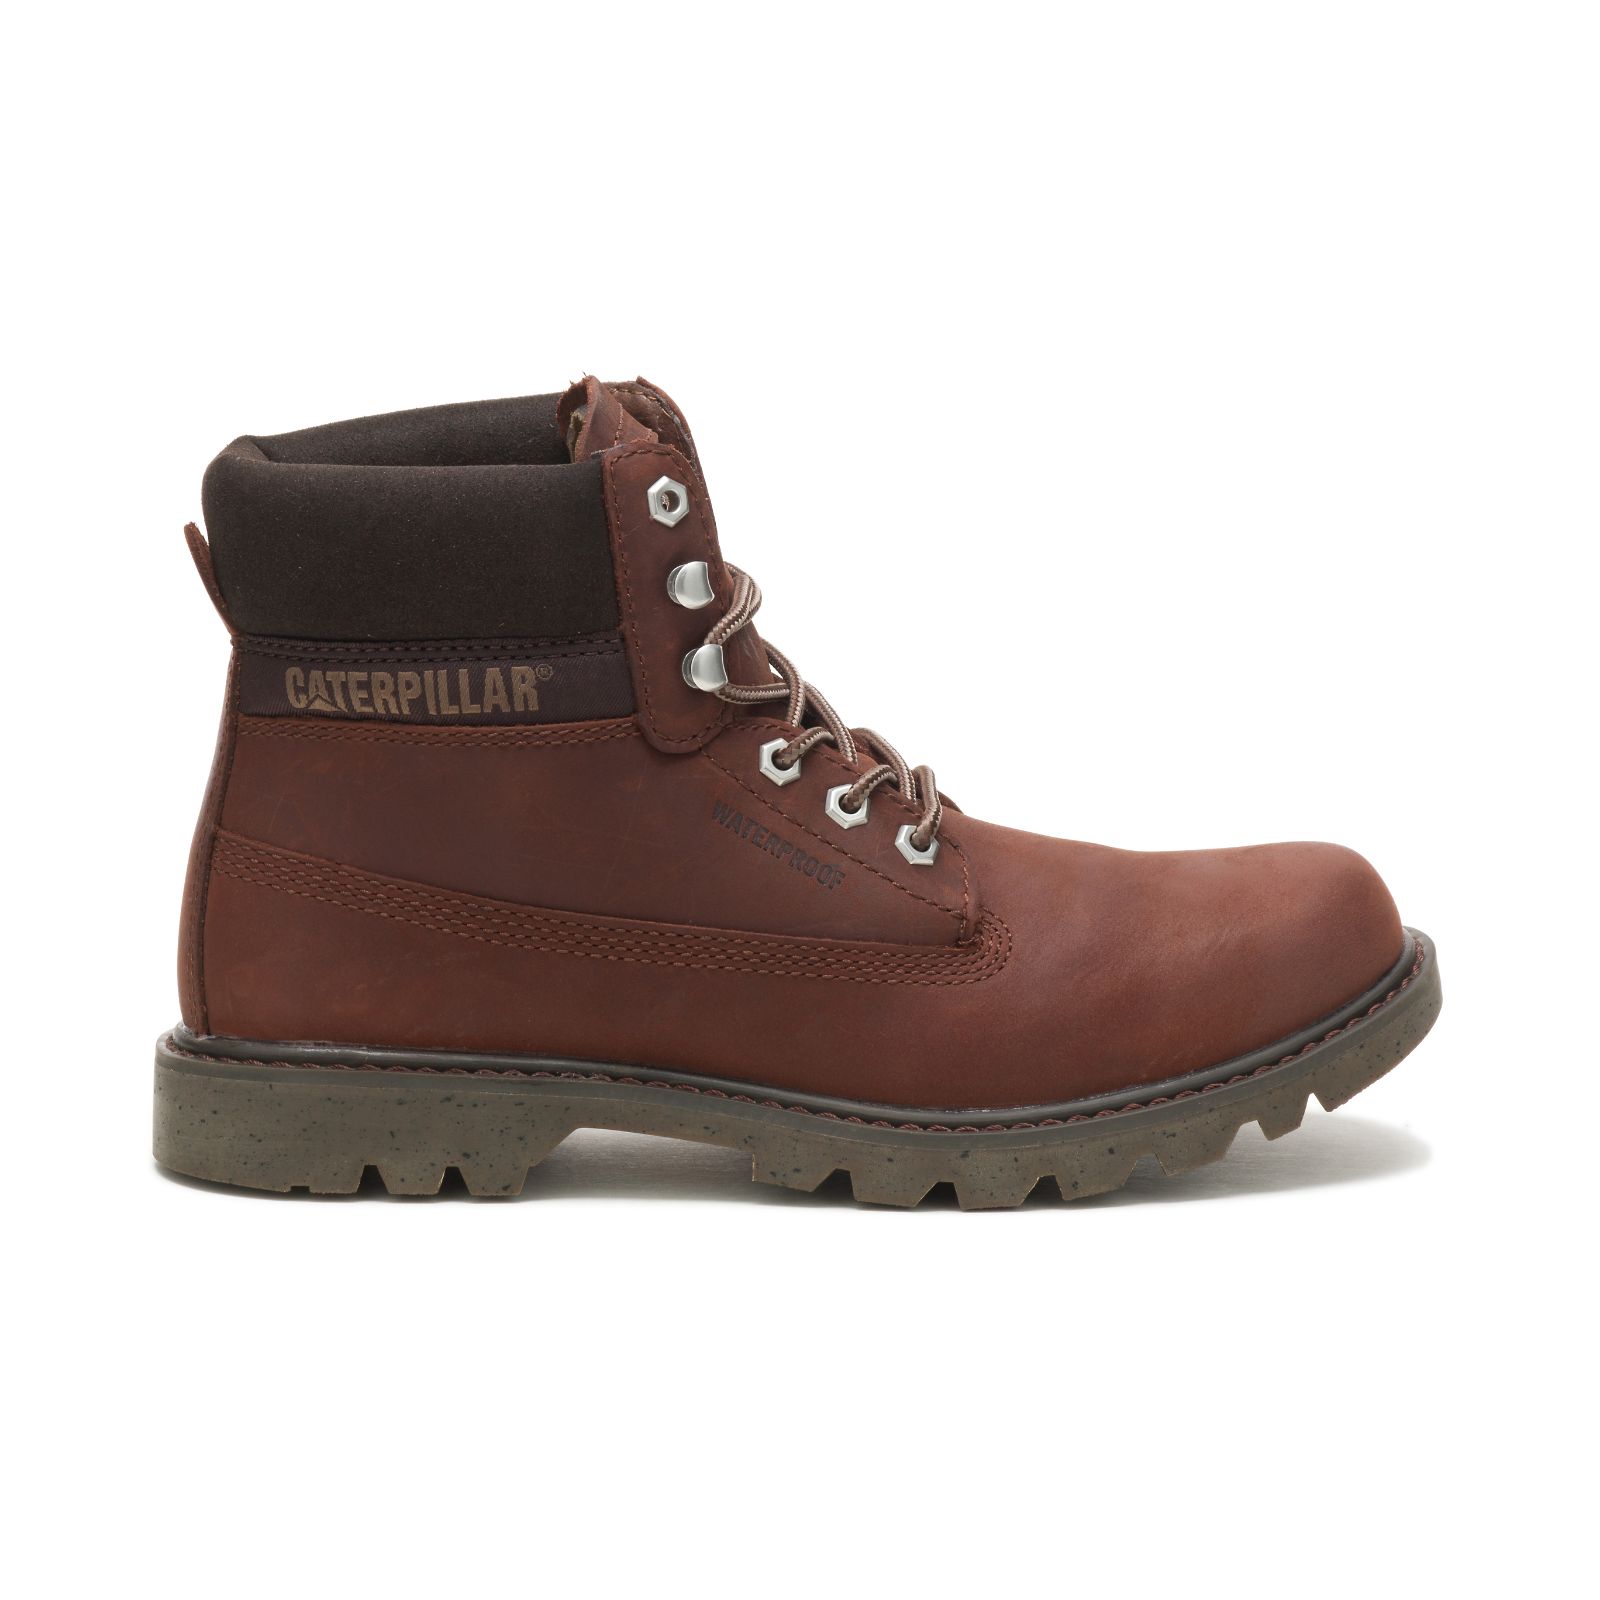 Brown Caterpillar Ecolorado Waterproof Women's Work Boots | Cat-207435